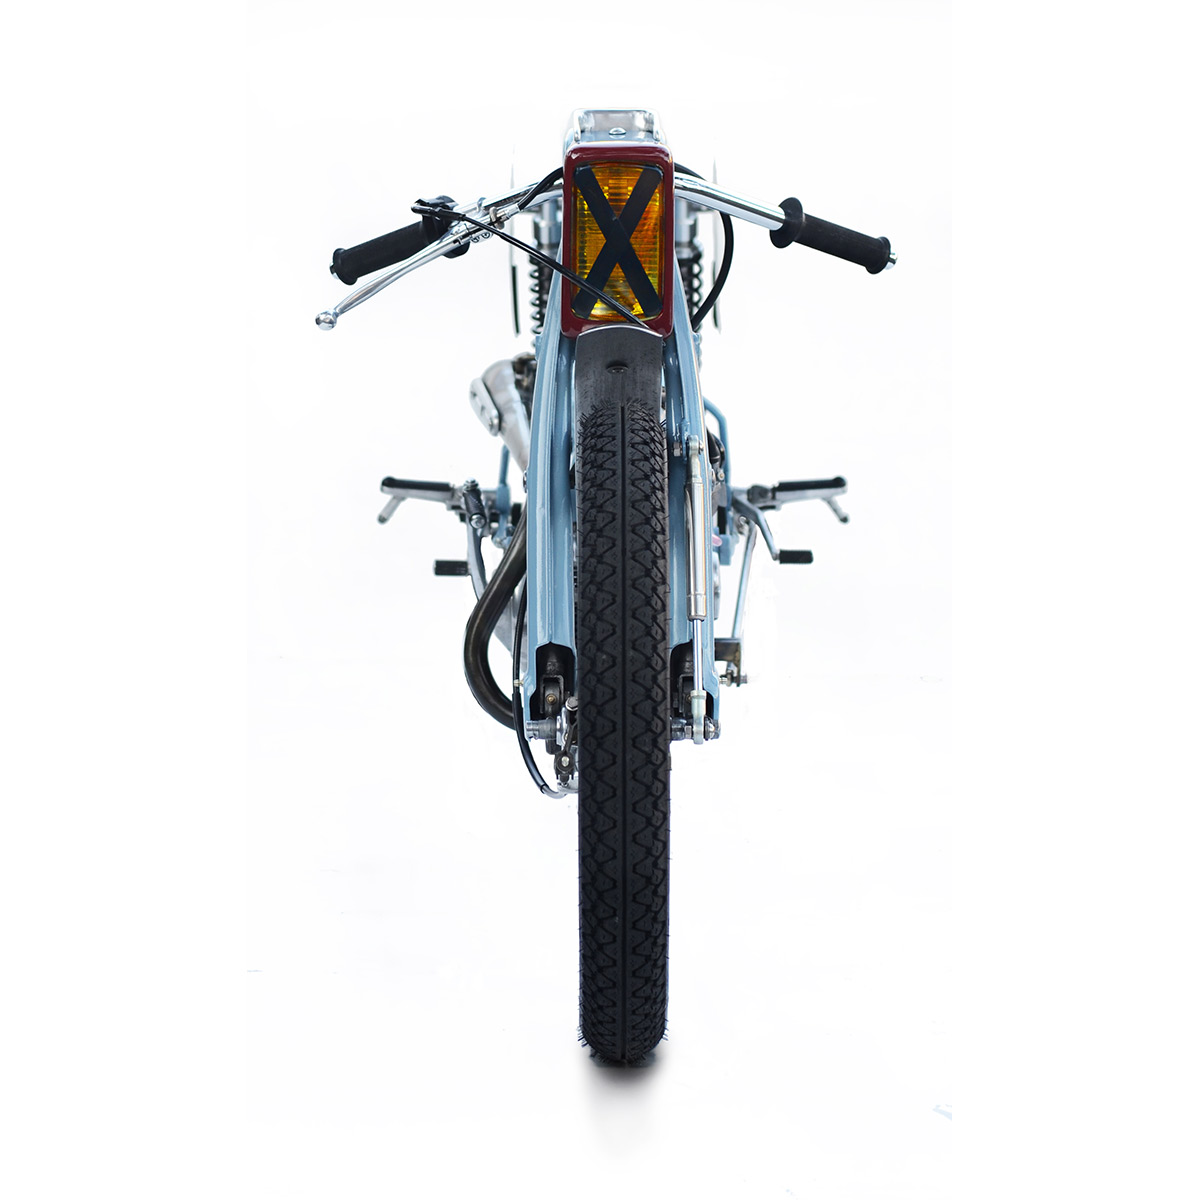 Deus Japan Hot Rods the Honda Super Cub | Bike EXIF